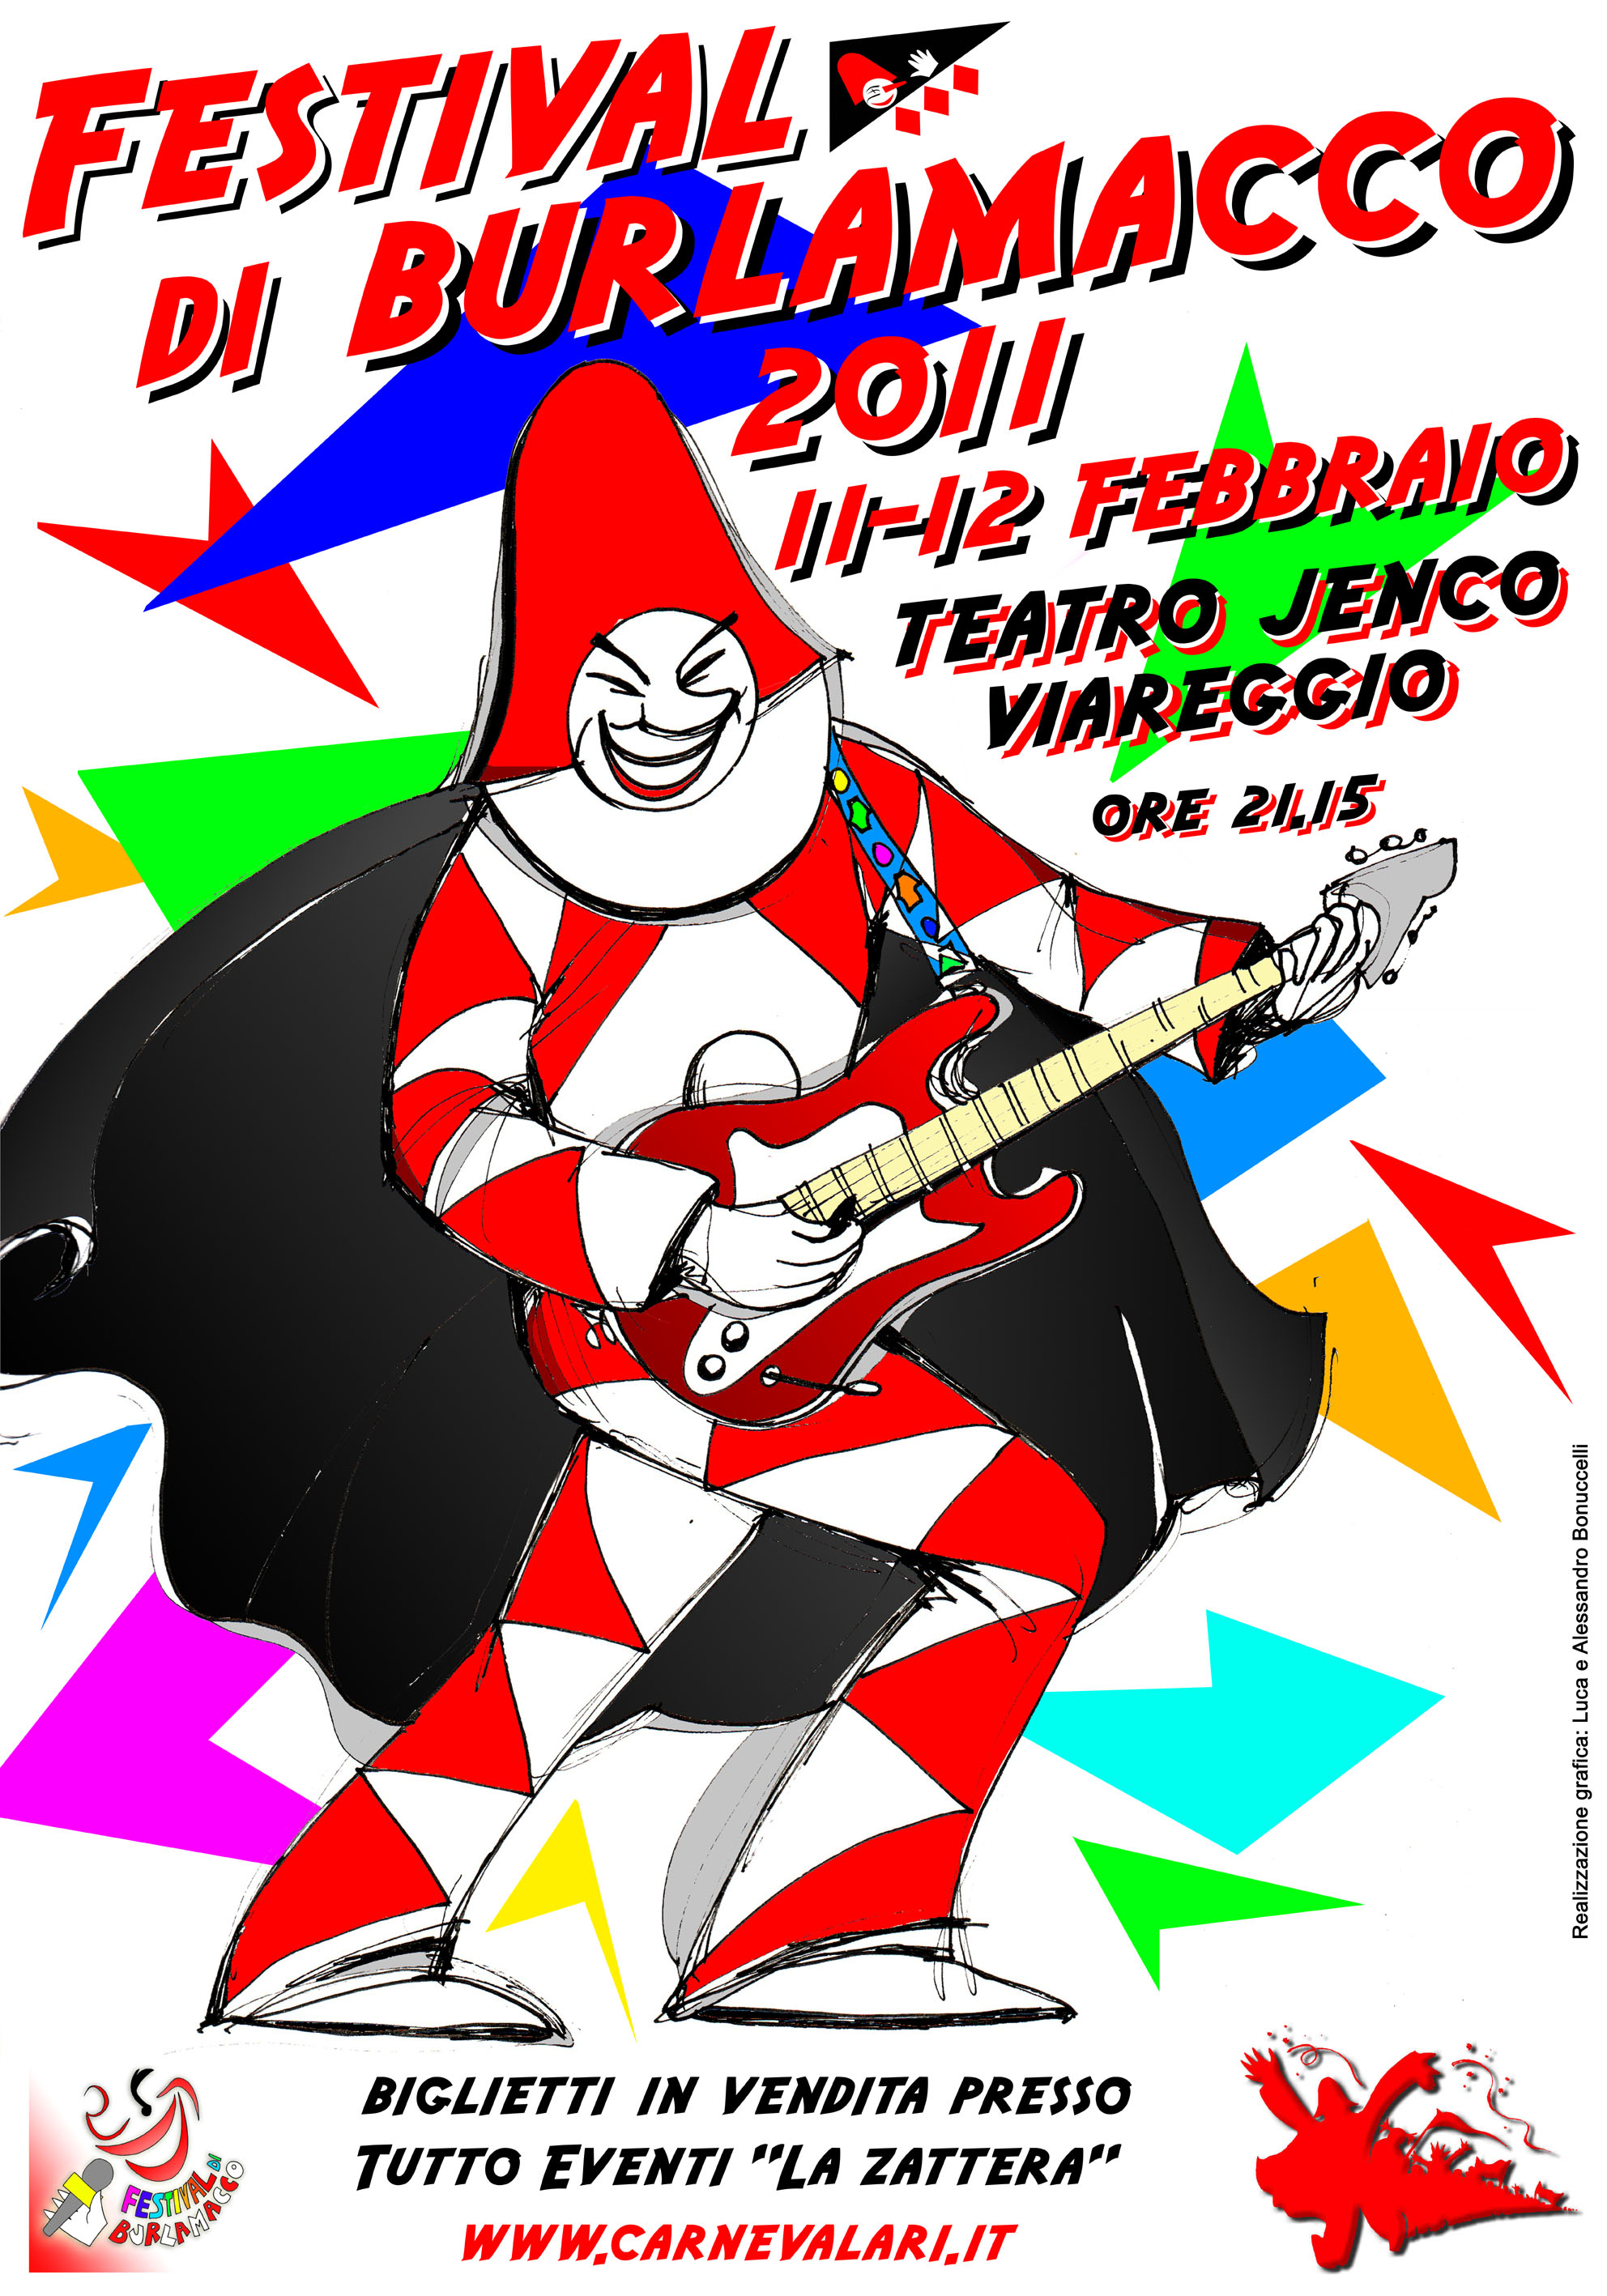 In vendita da oggi i biglietti del Festival di Burlamacco 2011